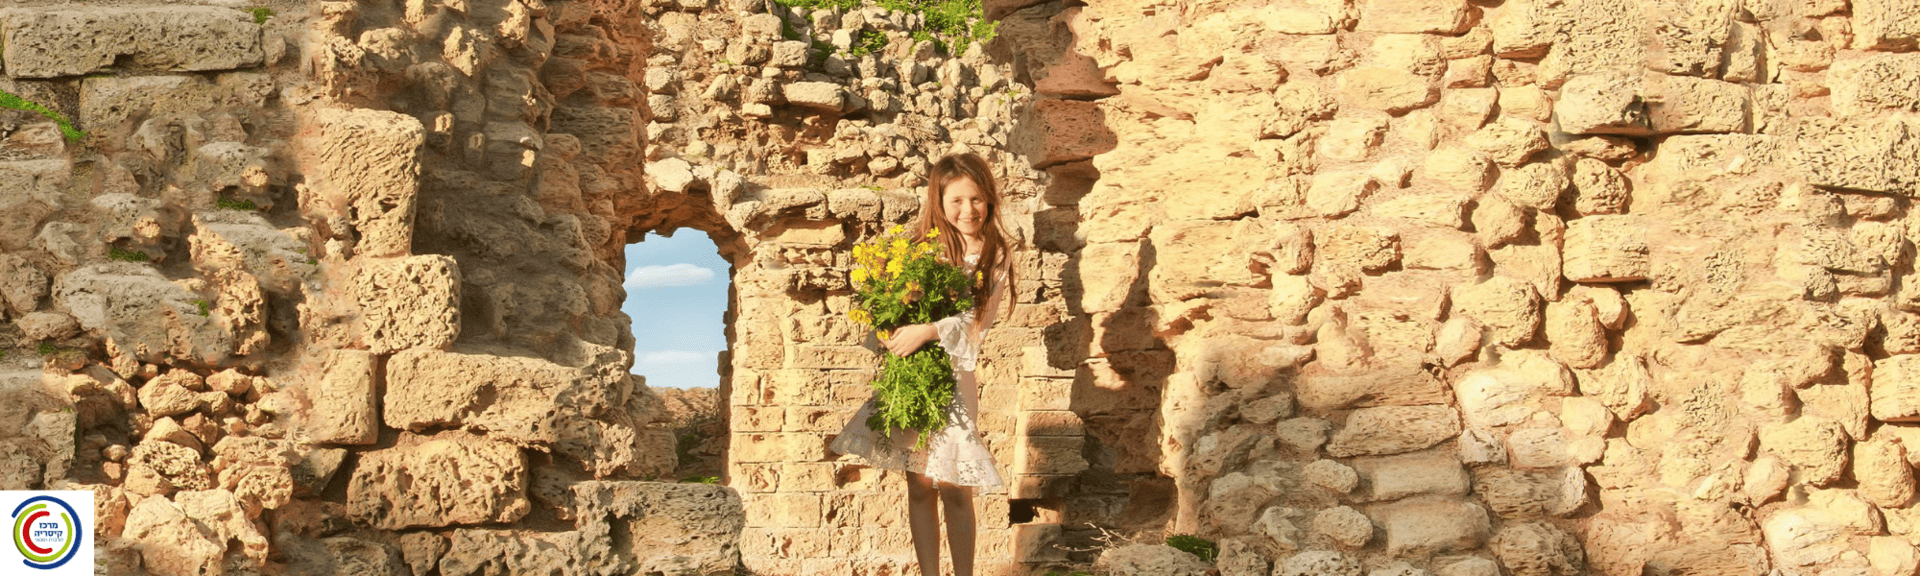 ילדה אוחזת זר פרחי בר צהובים על רקע קירות אבן עתיקים